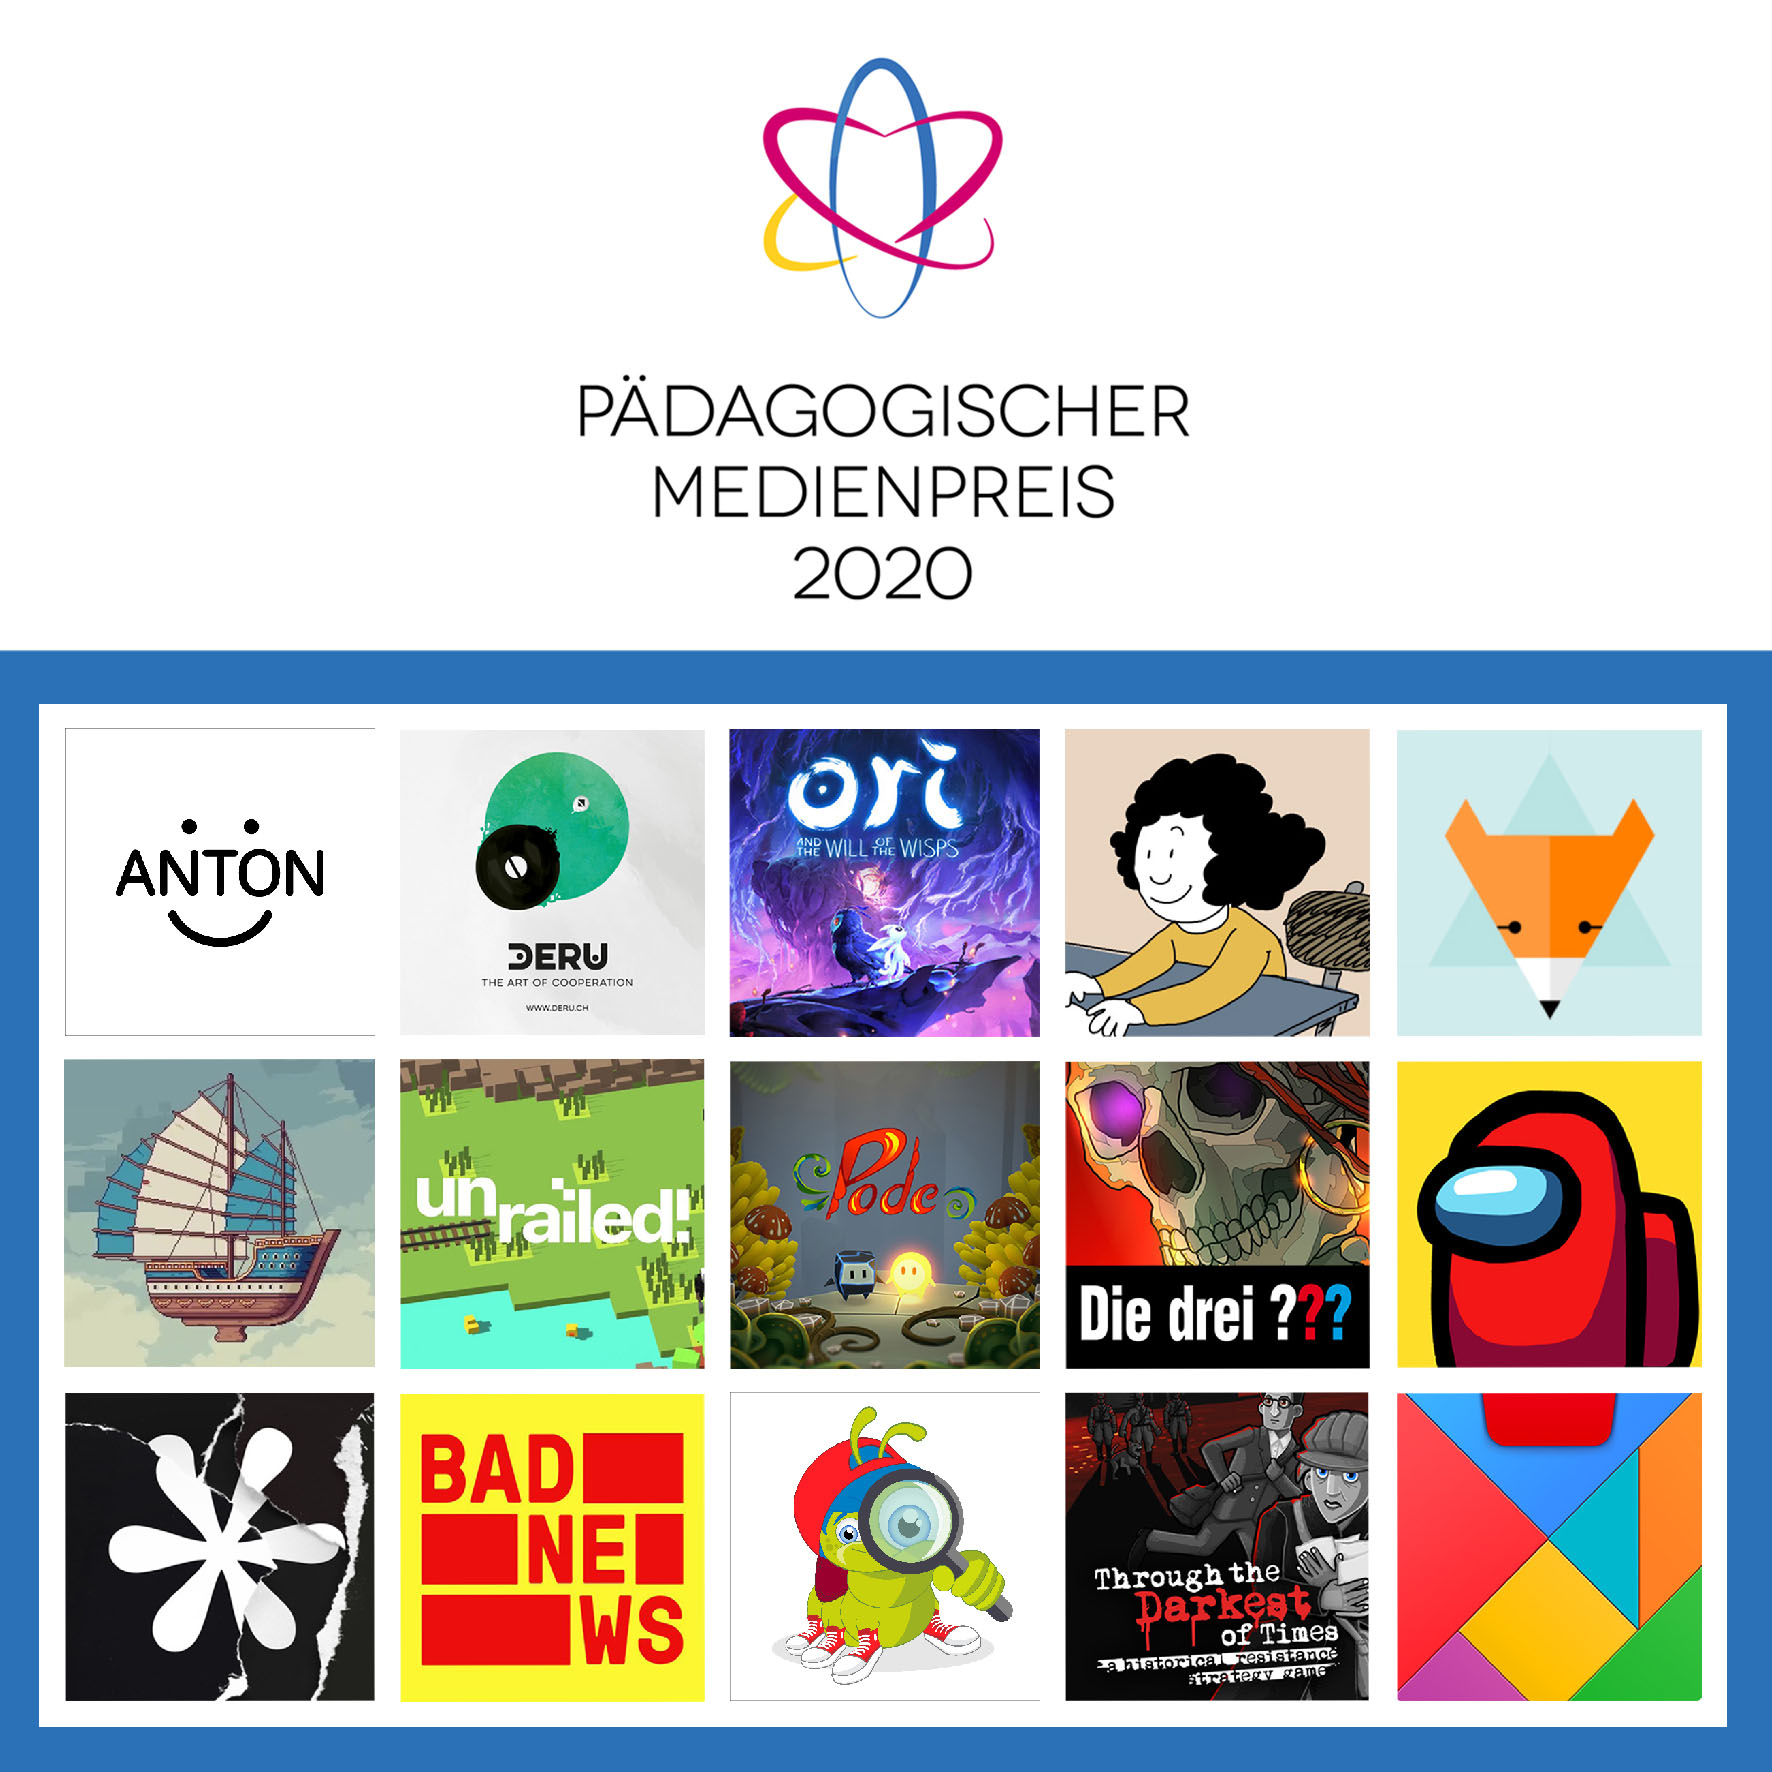 Pädagogischer Medienpreis 2020 – Die Gewinner